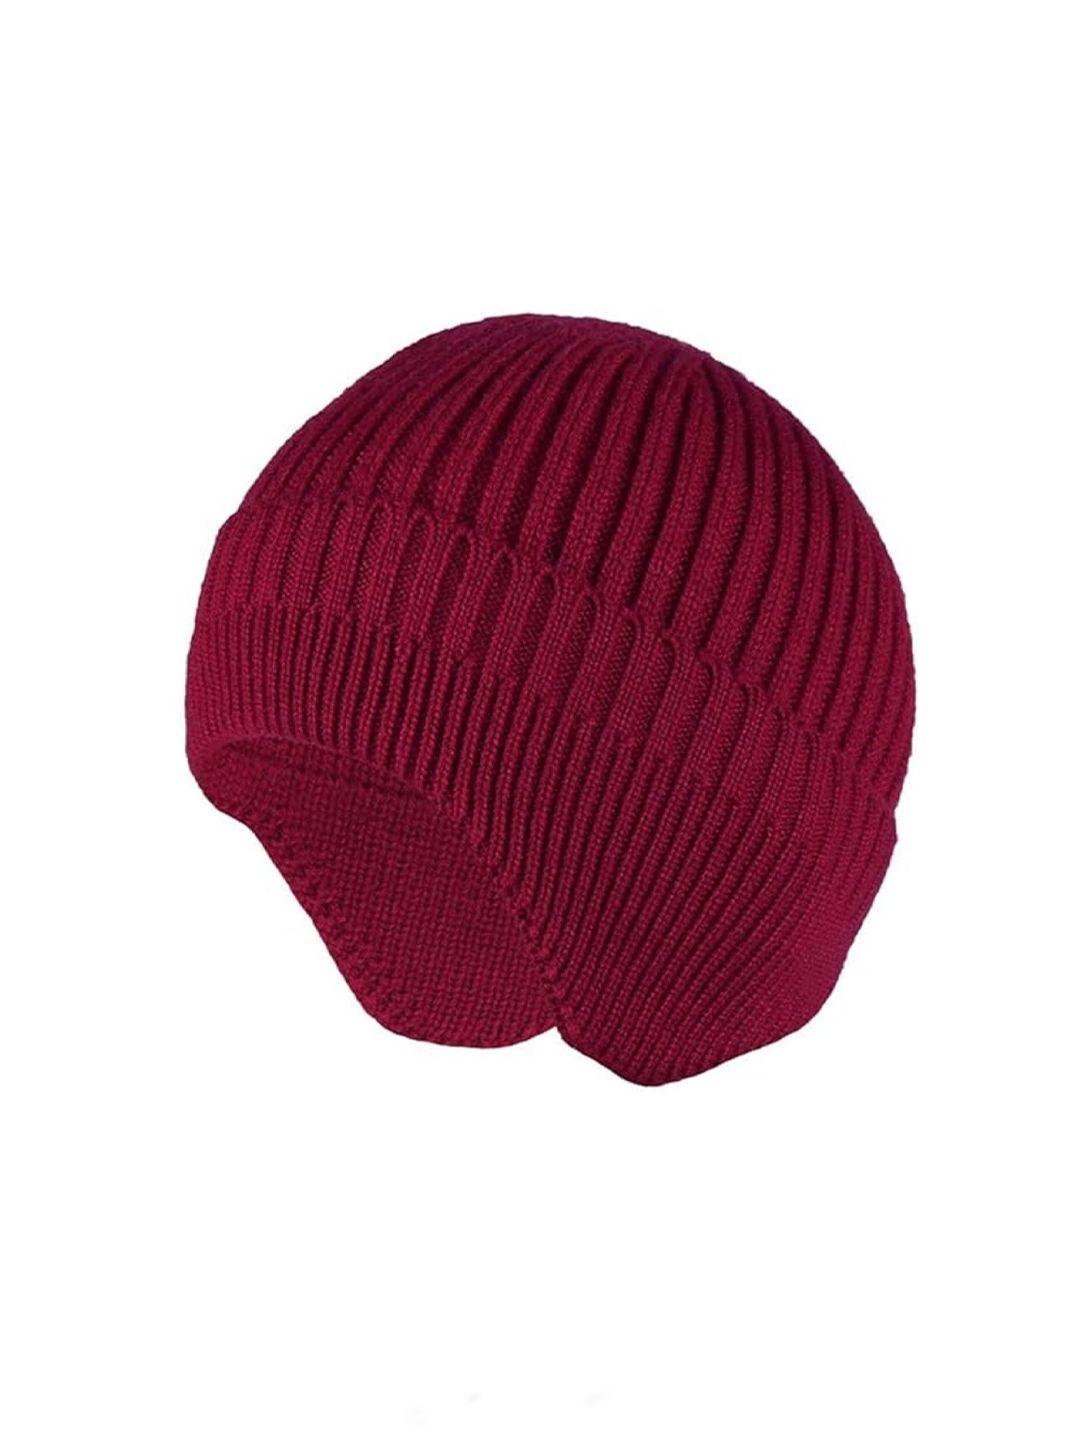 gajraj unisex woolen knitted earflap cap